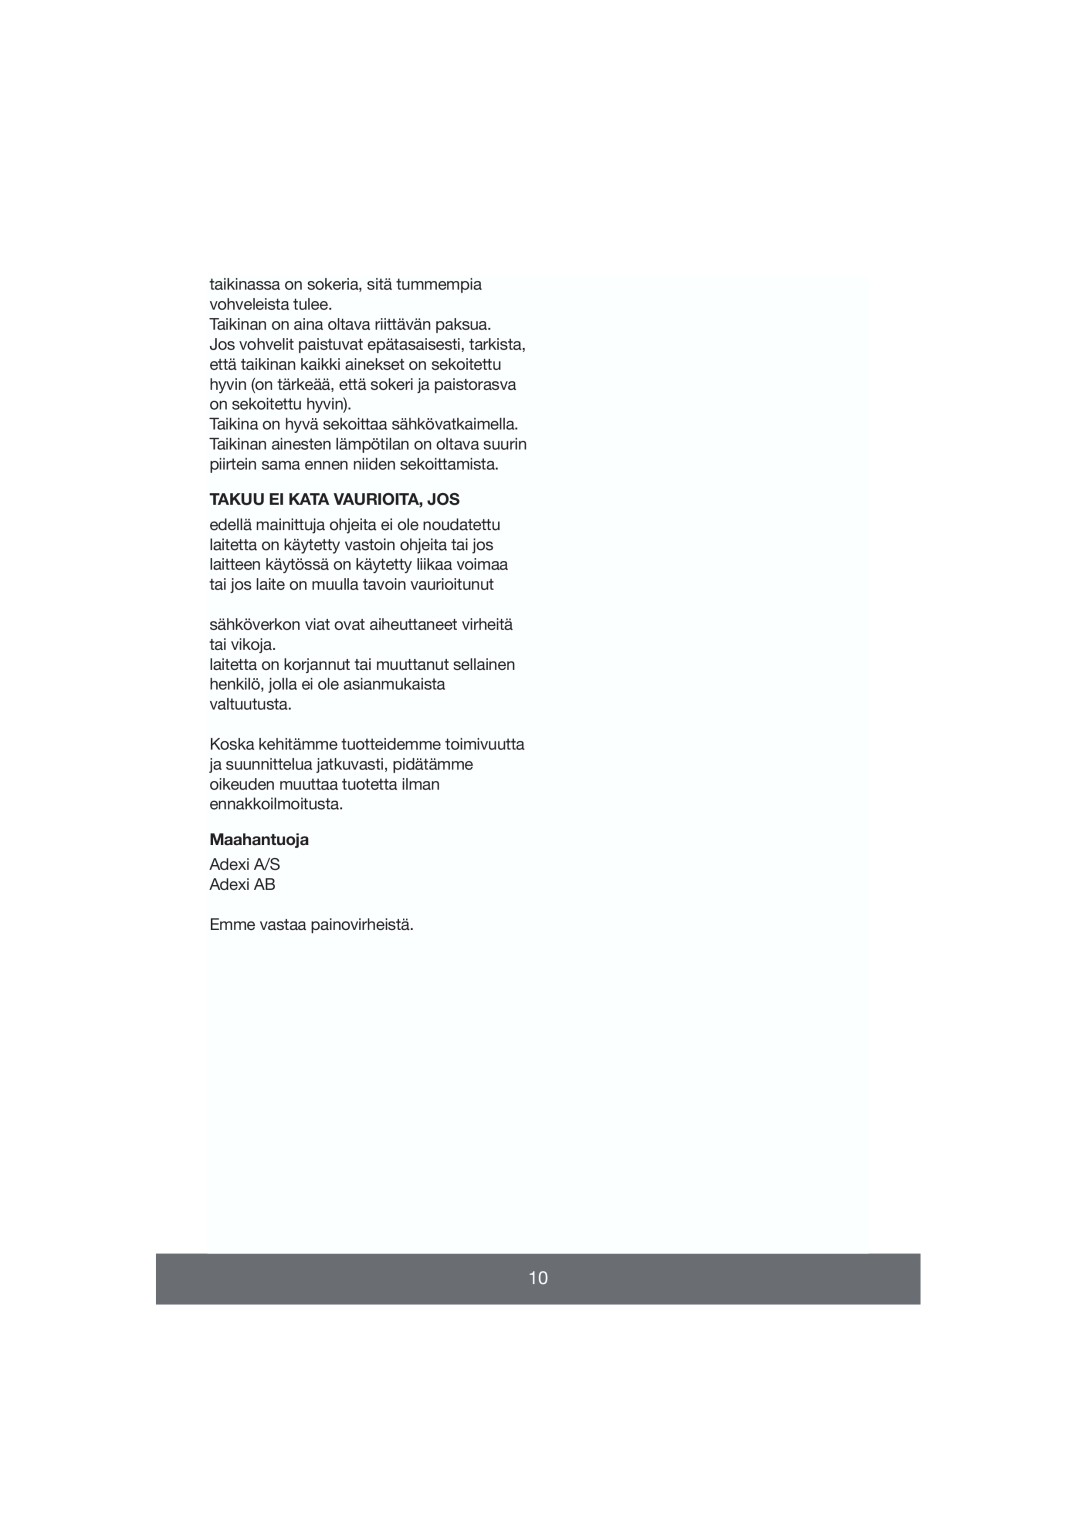 Melissa 643-009 manual Takuu Ei Kata Vaurioita, Jos, Maahantuoja 